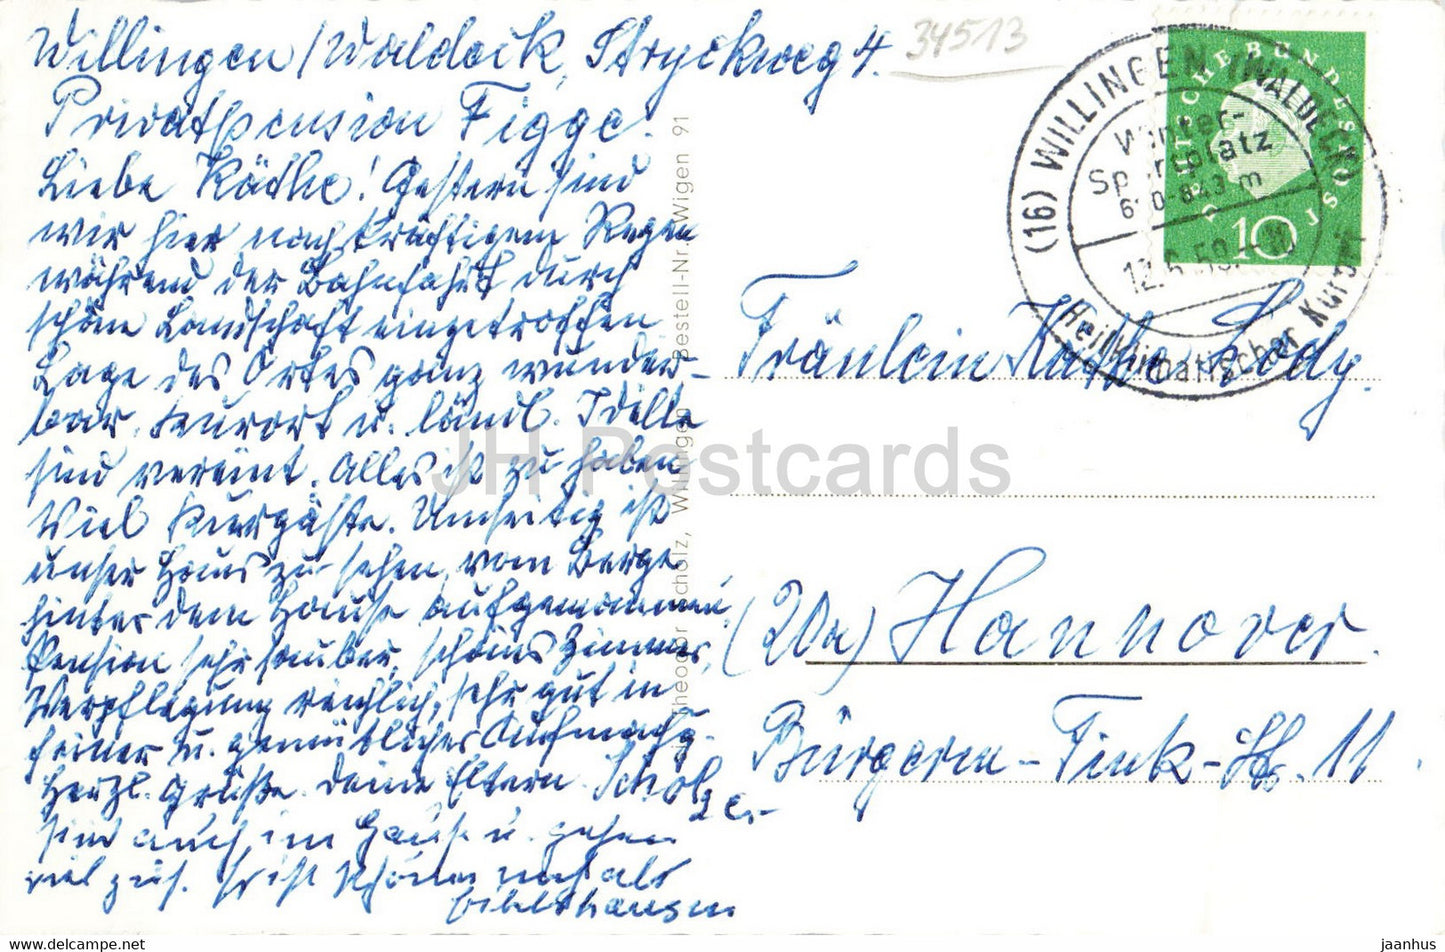 Willingen - Viadukt - alte Postkarte - 1959 - Deutschland - gebraucht